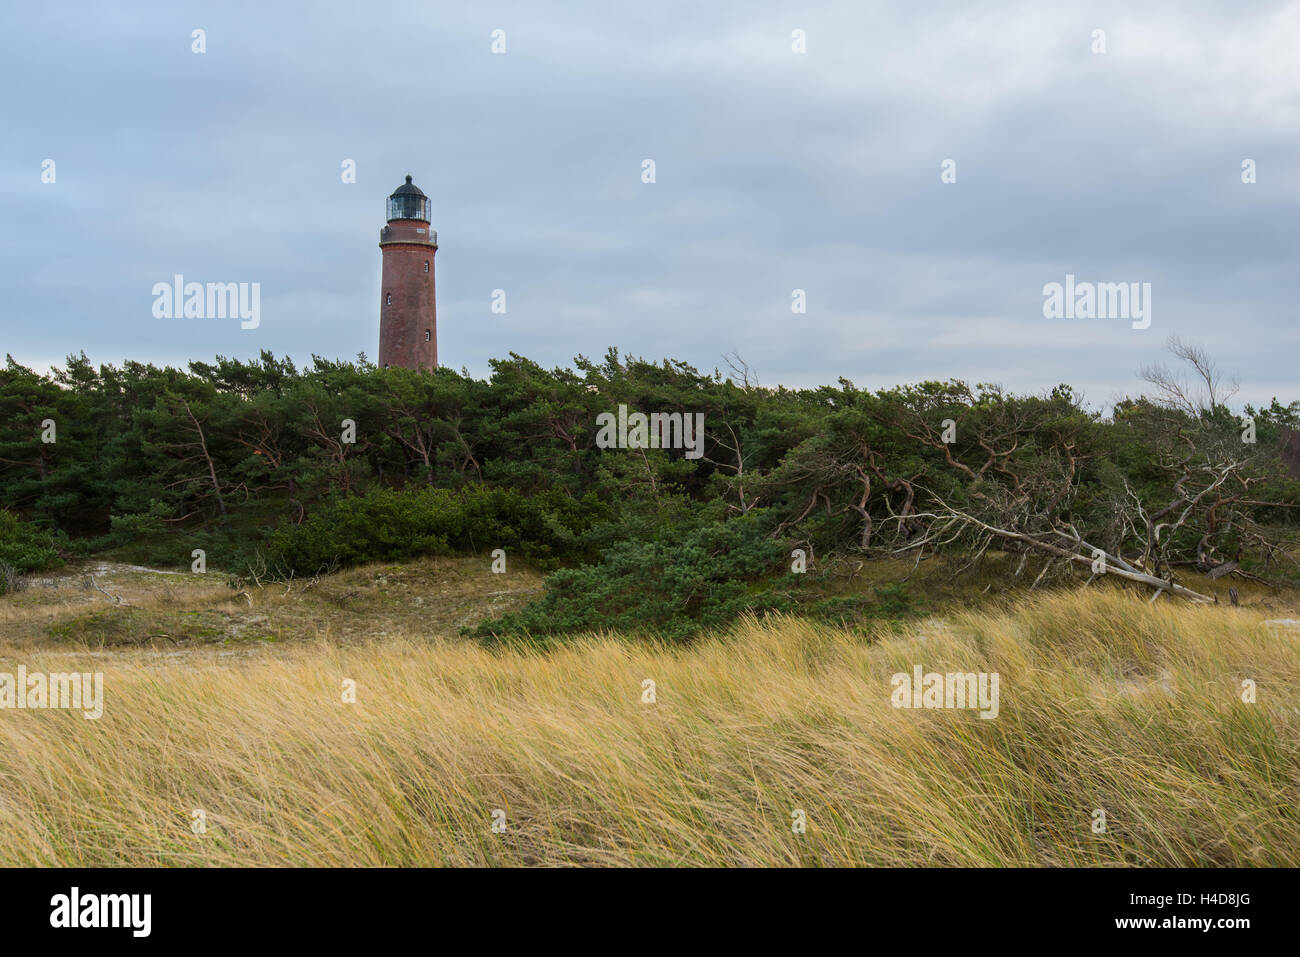 Leuchttum, côte, la mer Baltique, à l'ouest, 1, l'Allemagne, de l'Europe Banque D'Images